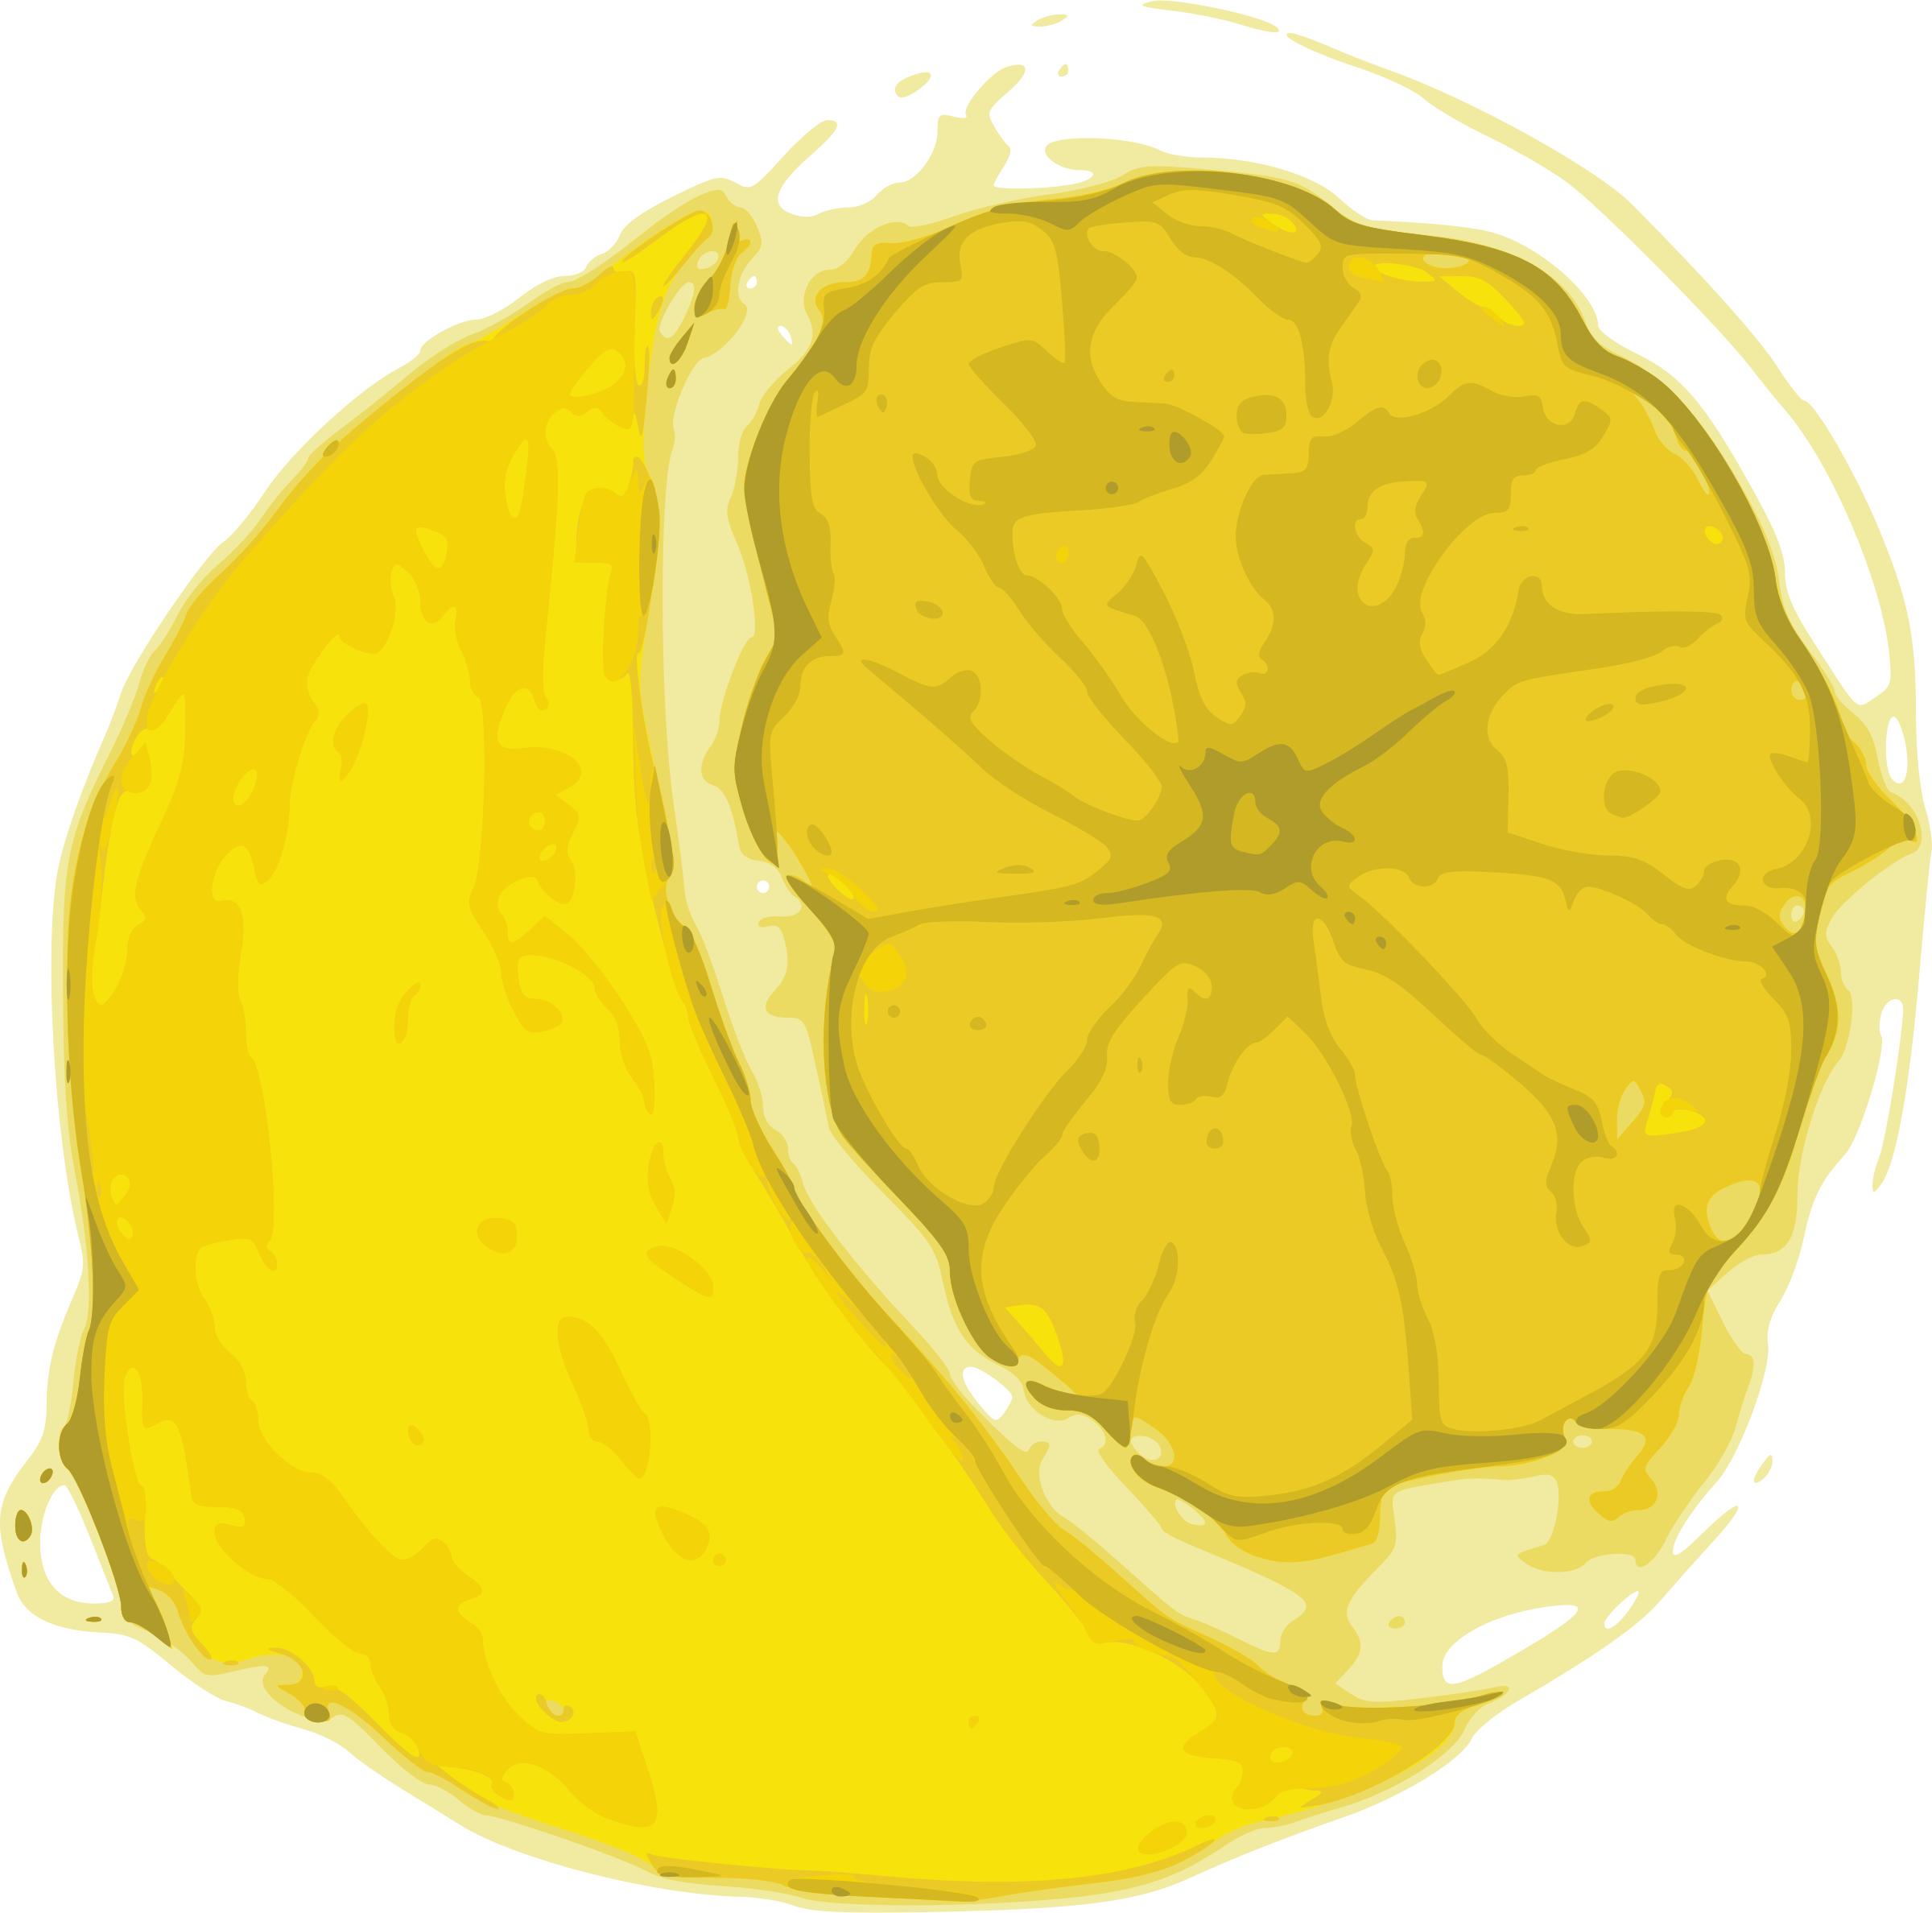 Lemon 1 png